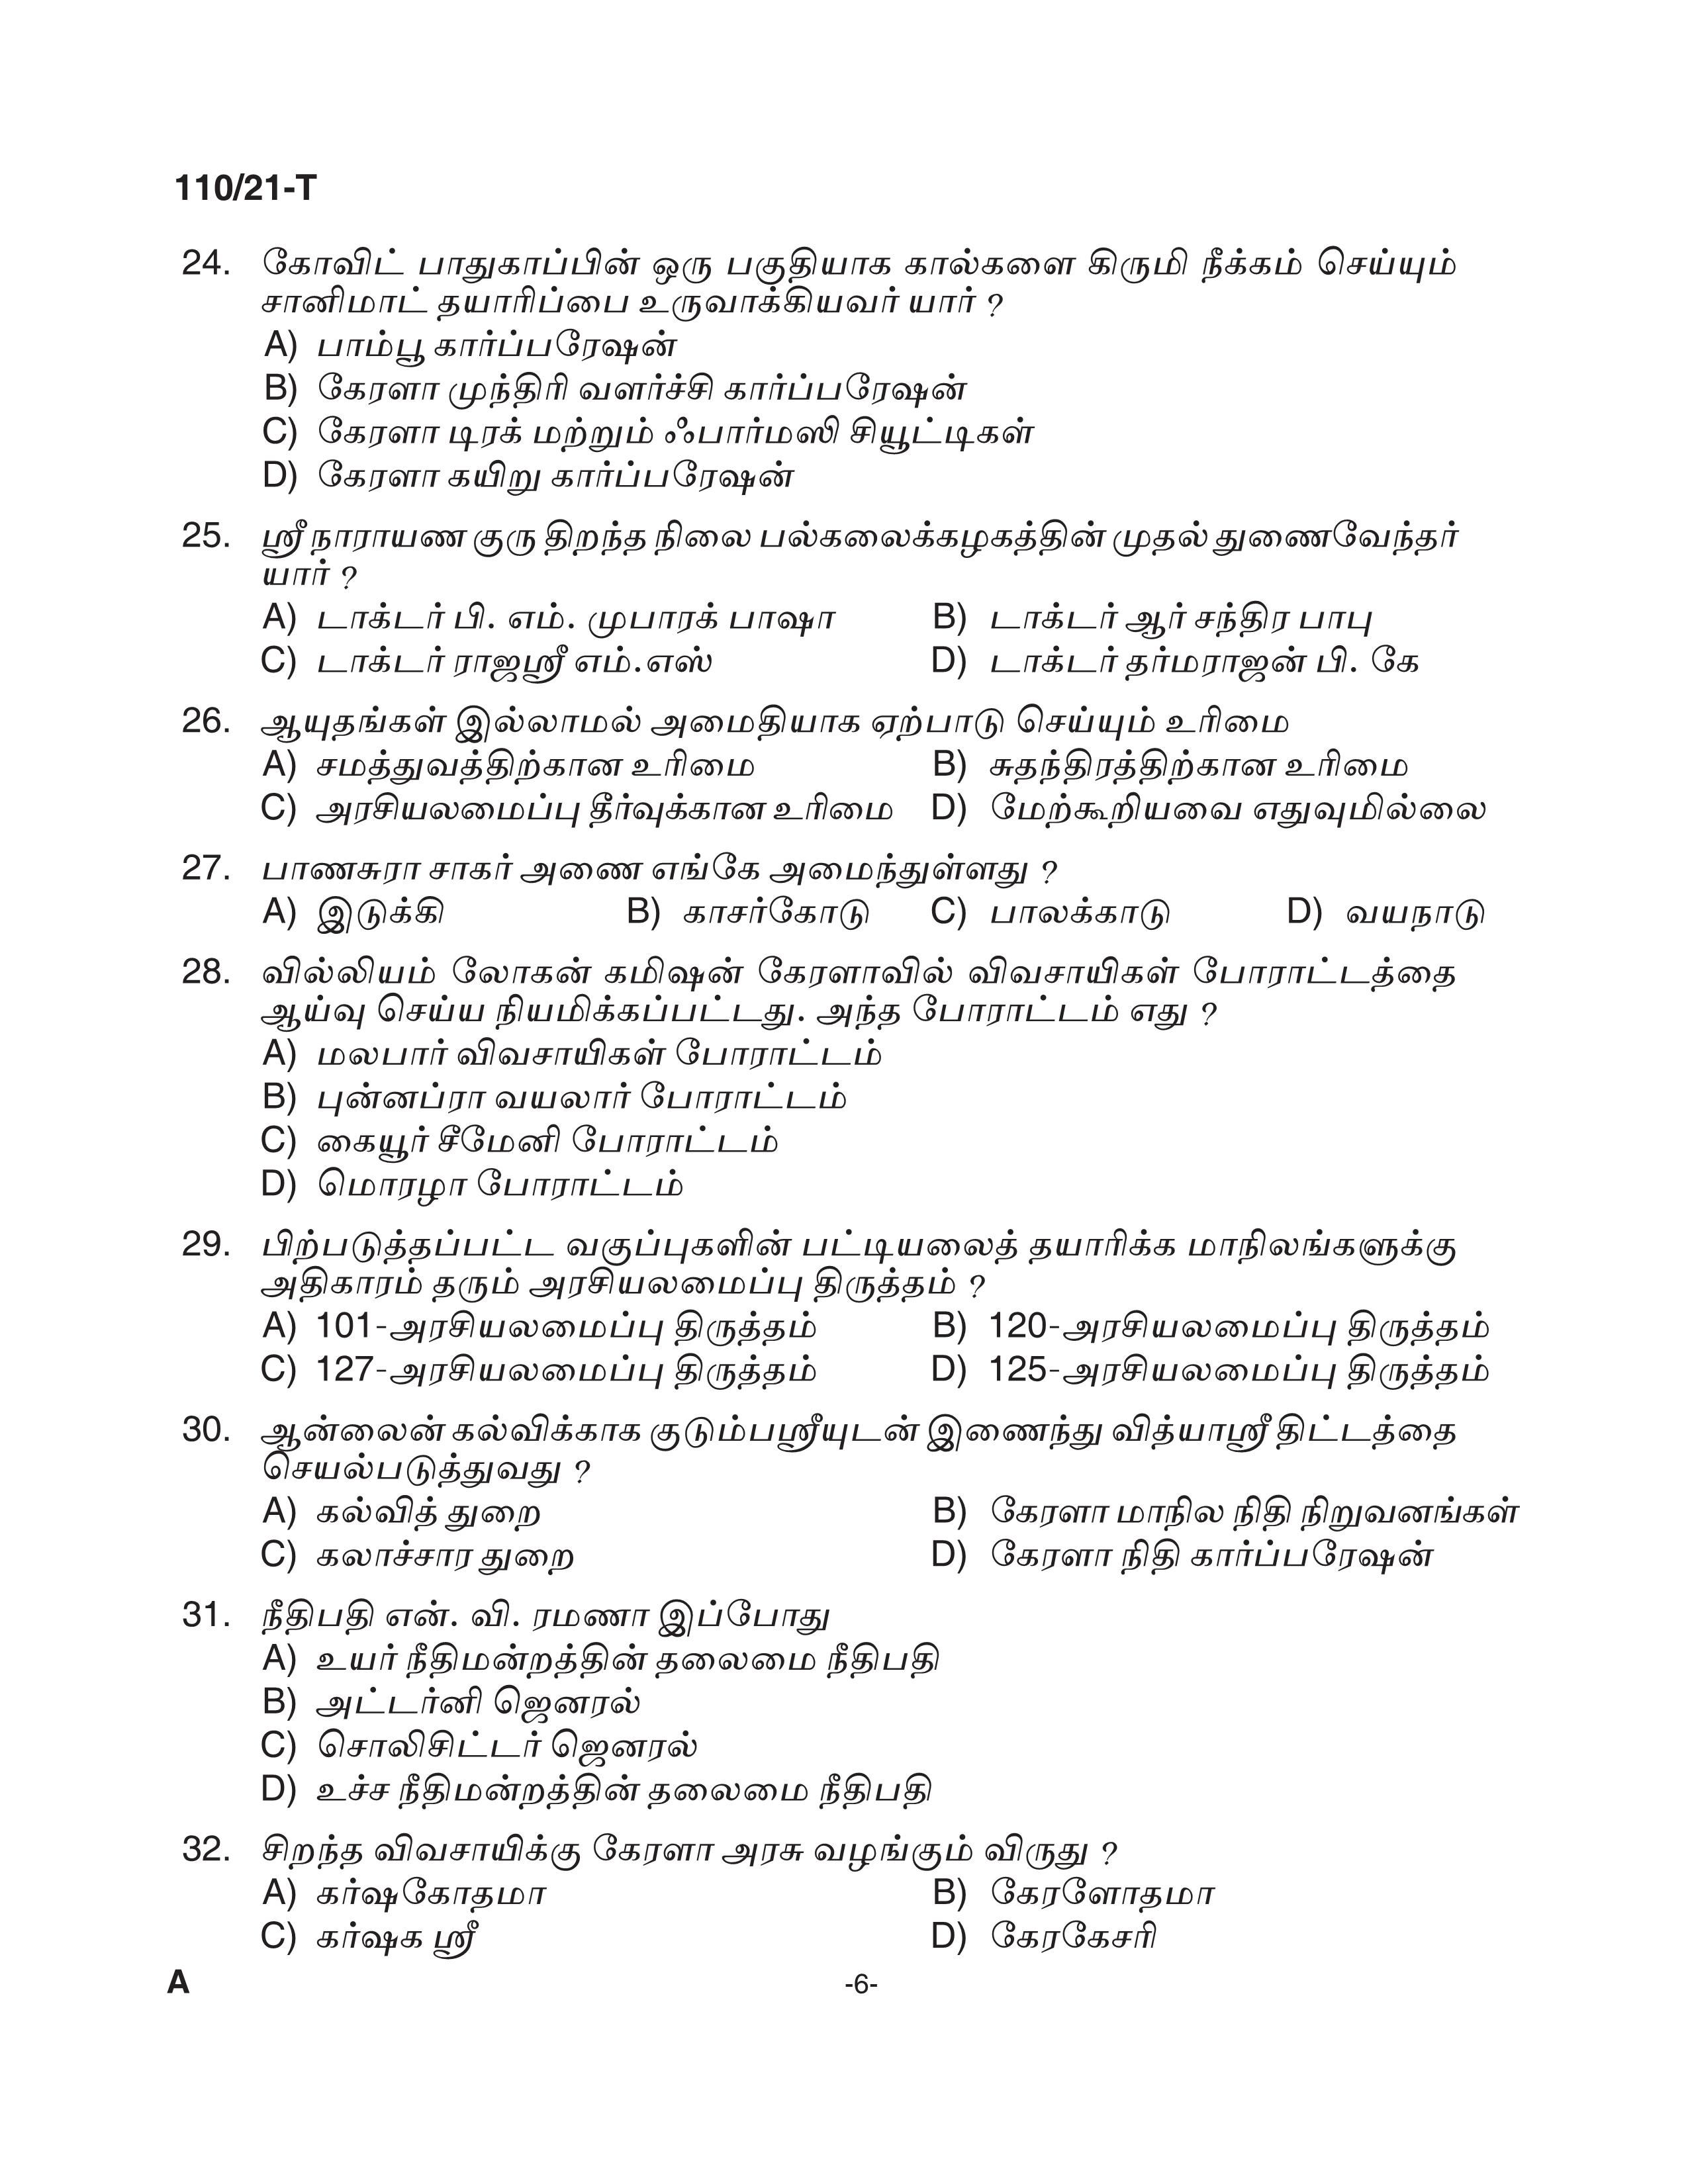 KPSC Assistant Grade II Sergeant Tamil Exam 2021 Code 1102021 T 5